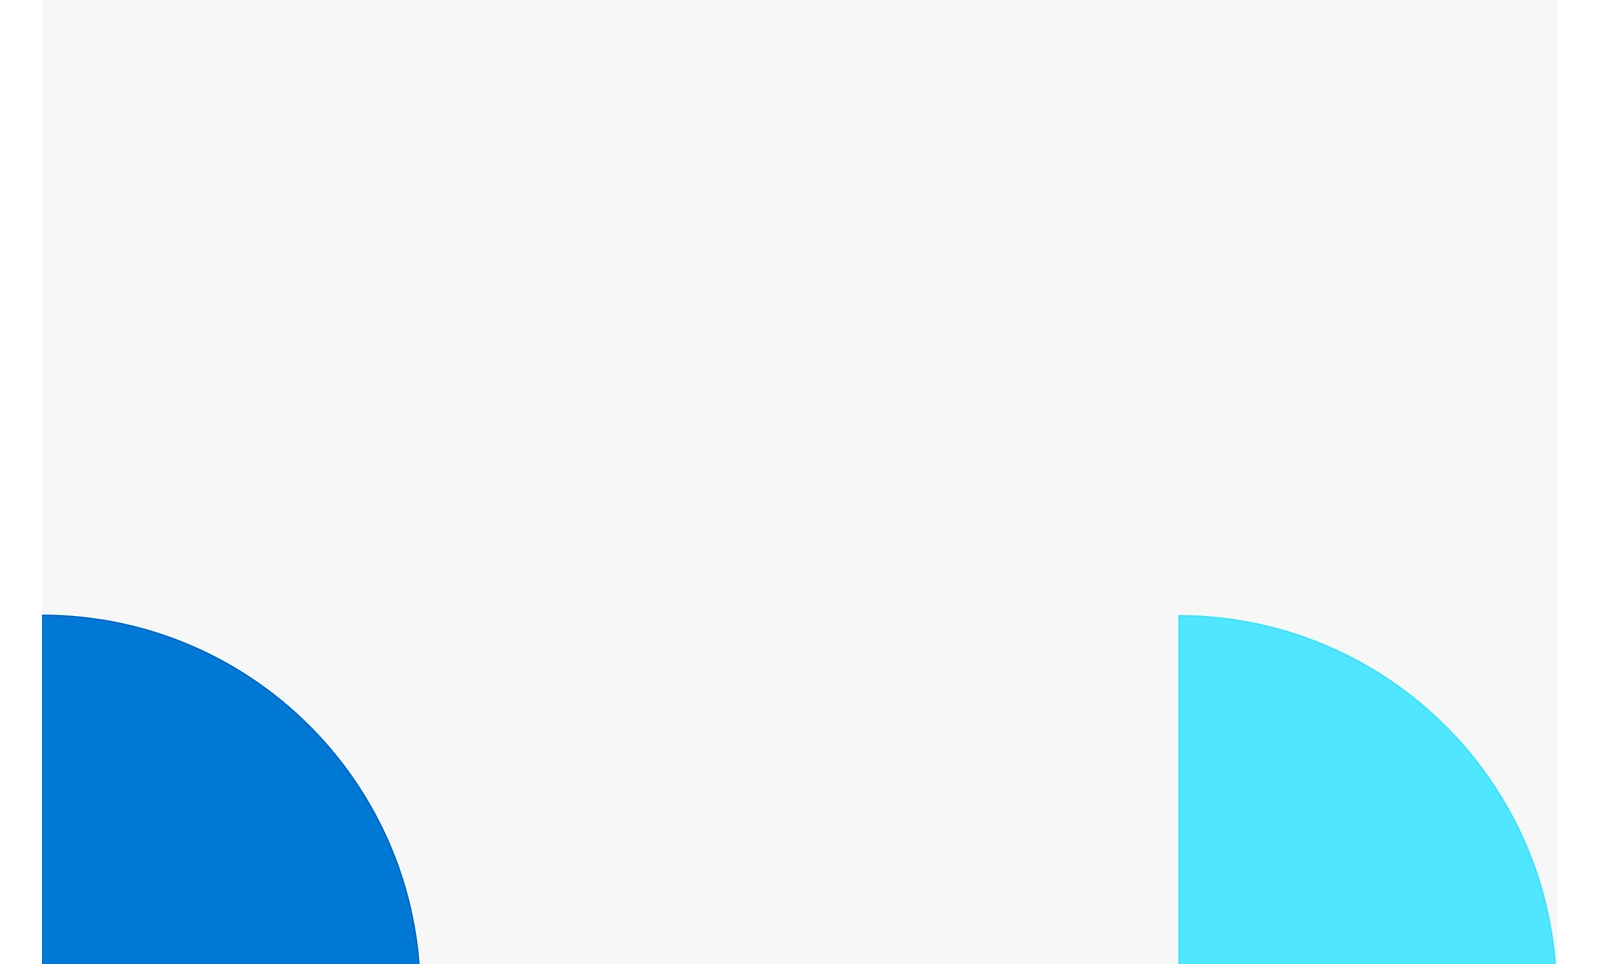 Due forme circolari sovrapposte con uno sfondo bianco, una blu a sinistra e una blu più chiaro a destra.